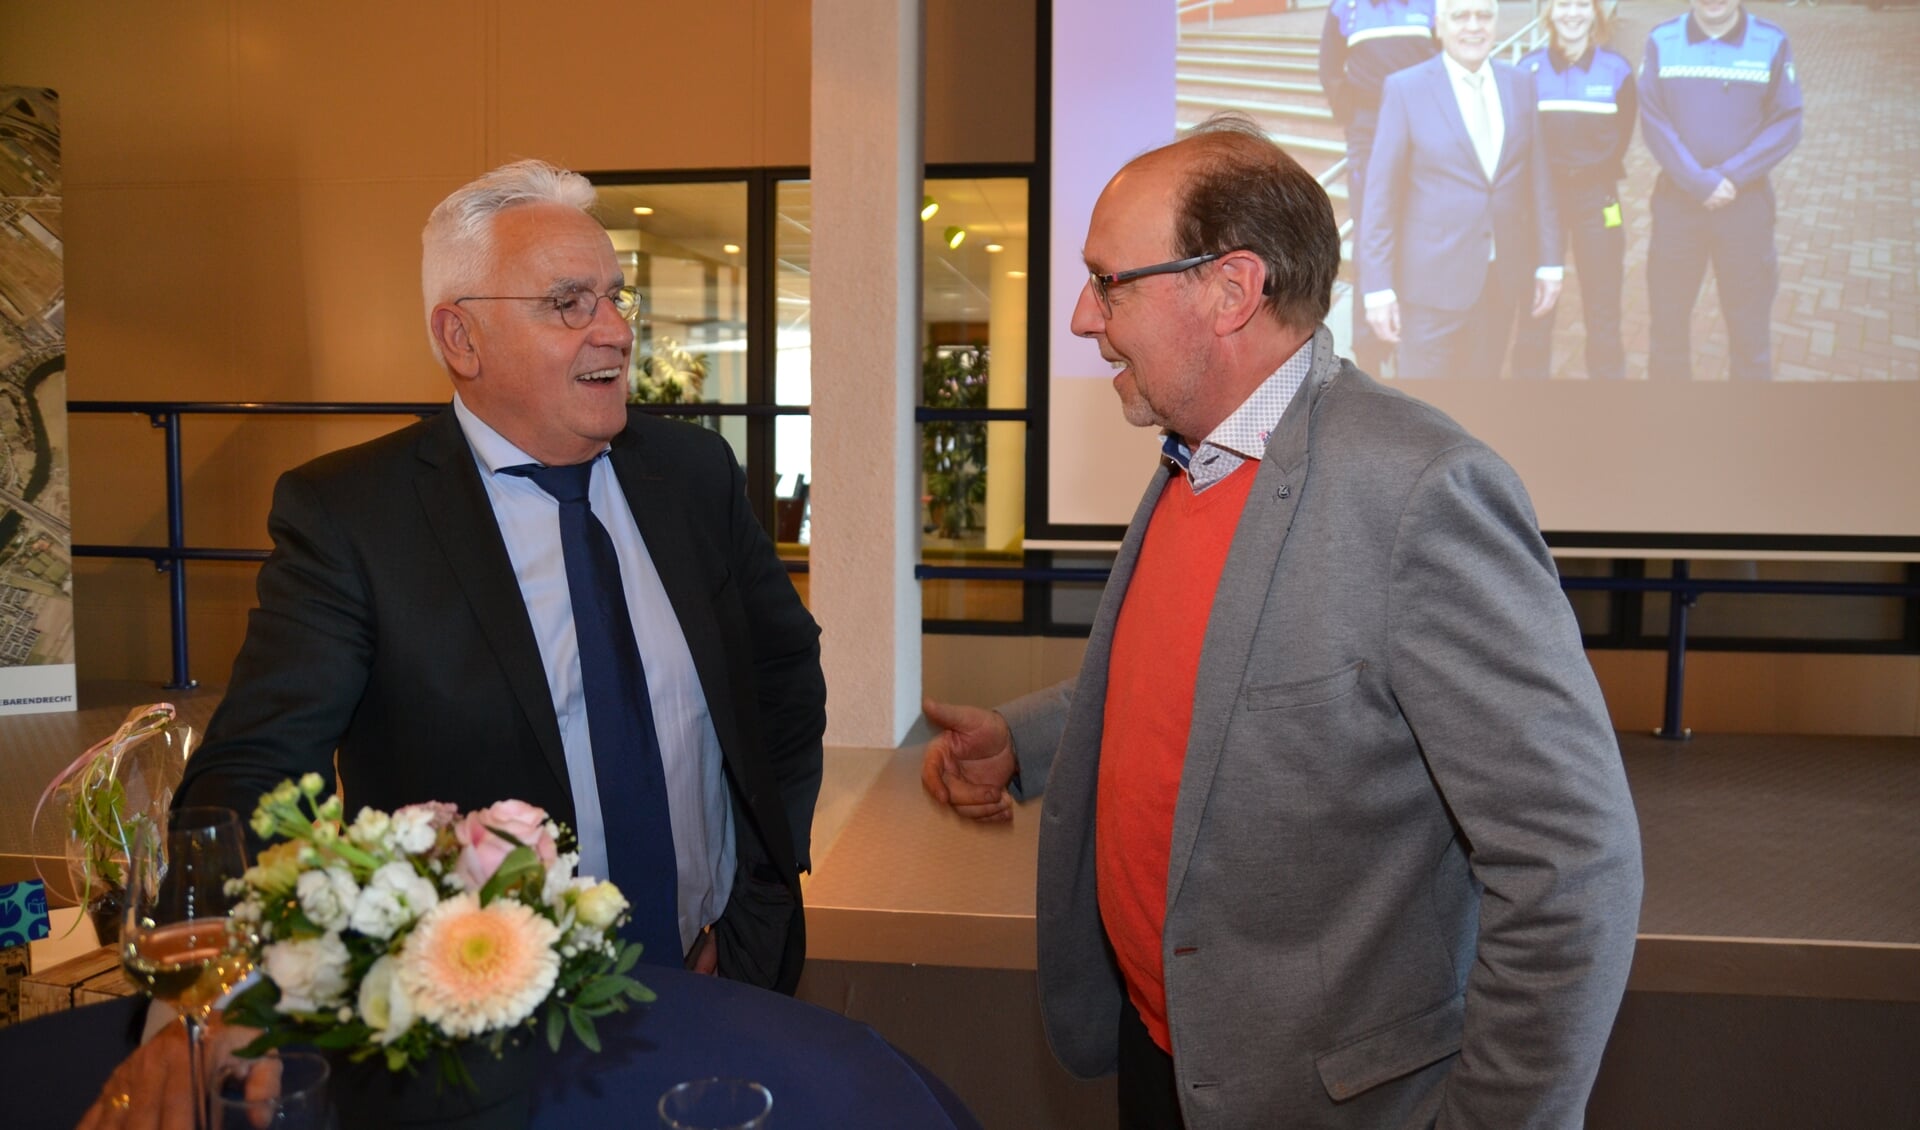 Oud-wethouder Cees Schaap in gesprek met ondernemer Piet Barendregt.)